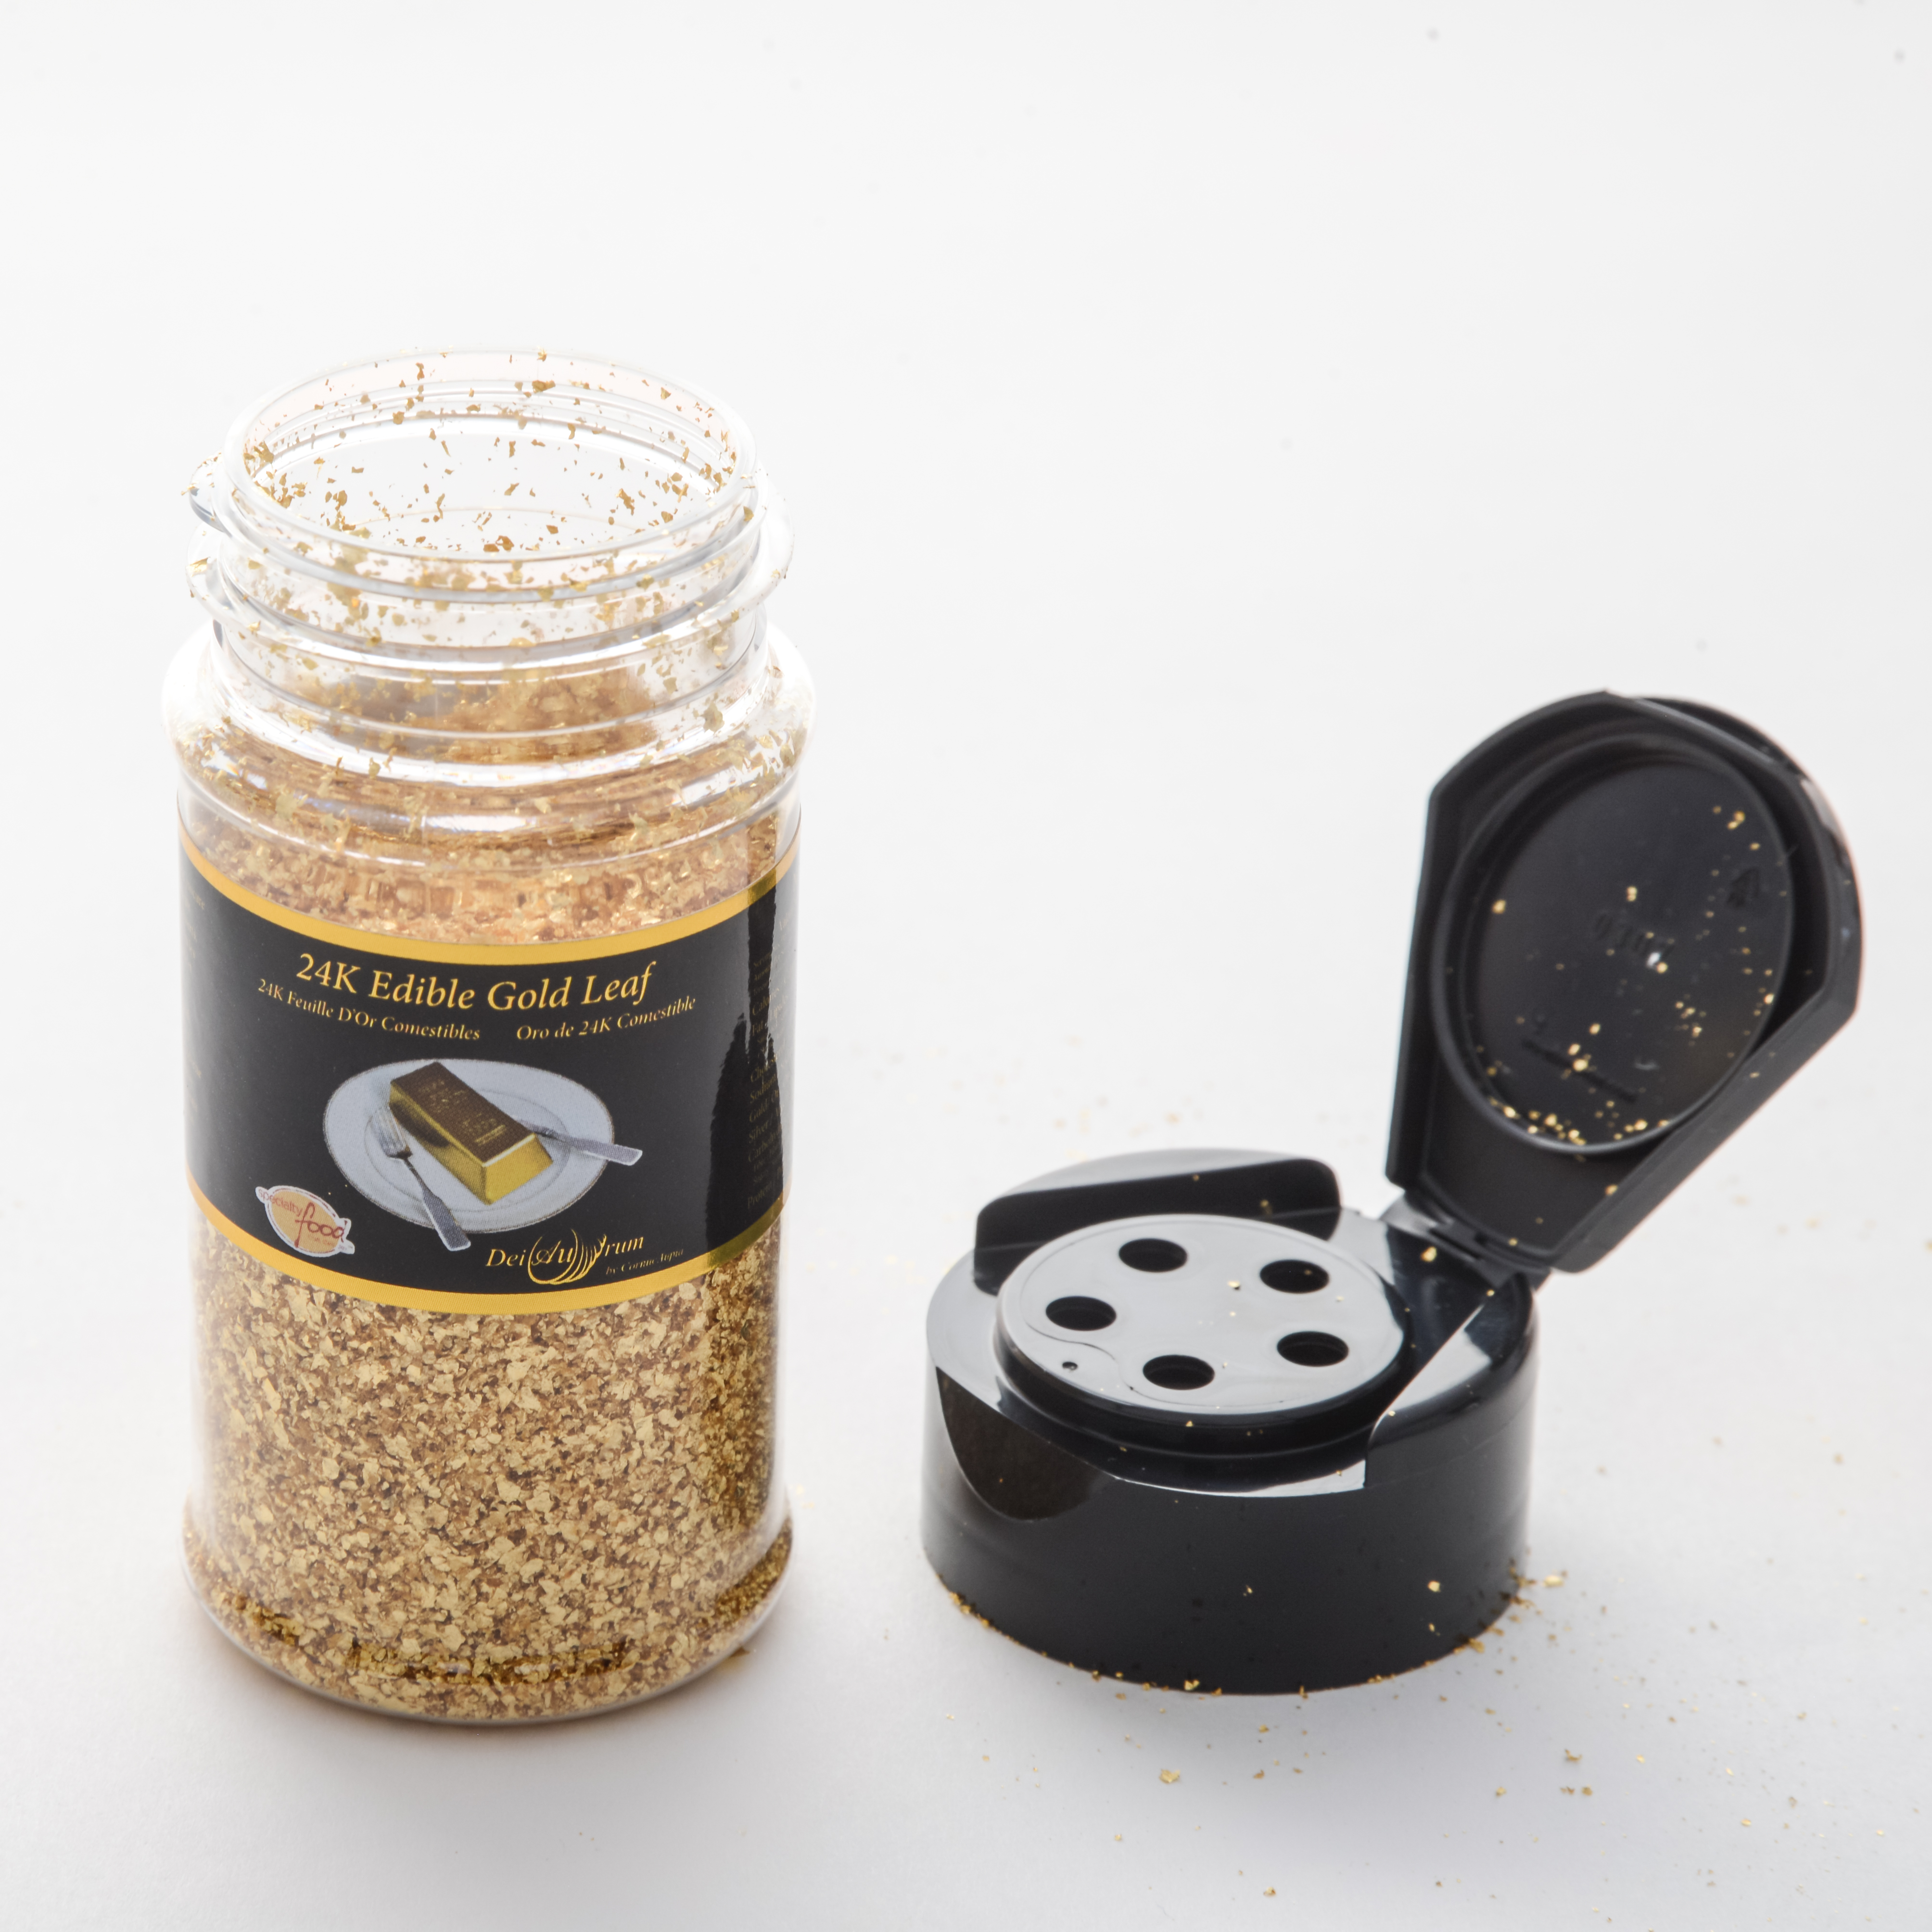 Pure 24k Gold Powder 5g FINE Hand-ground in Glass Jar : Element Au